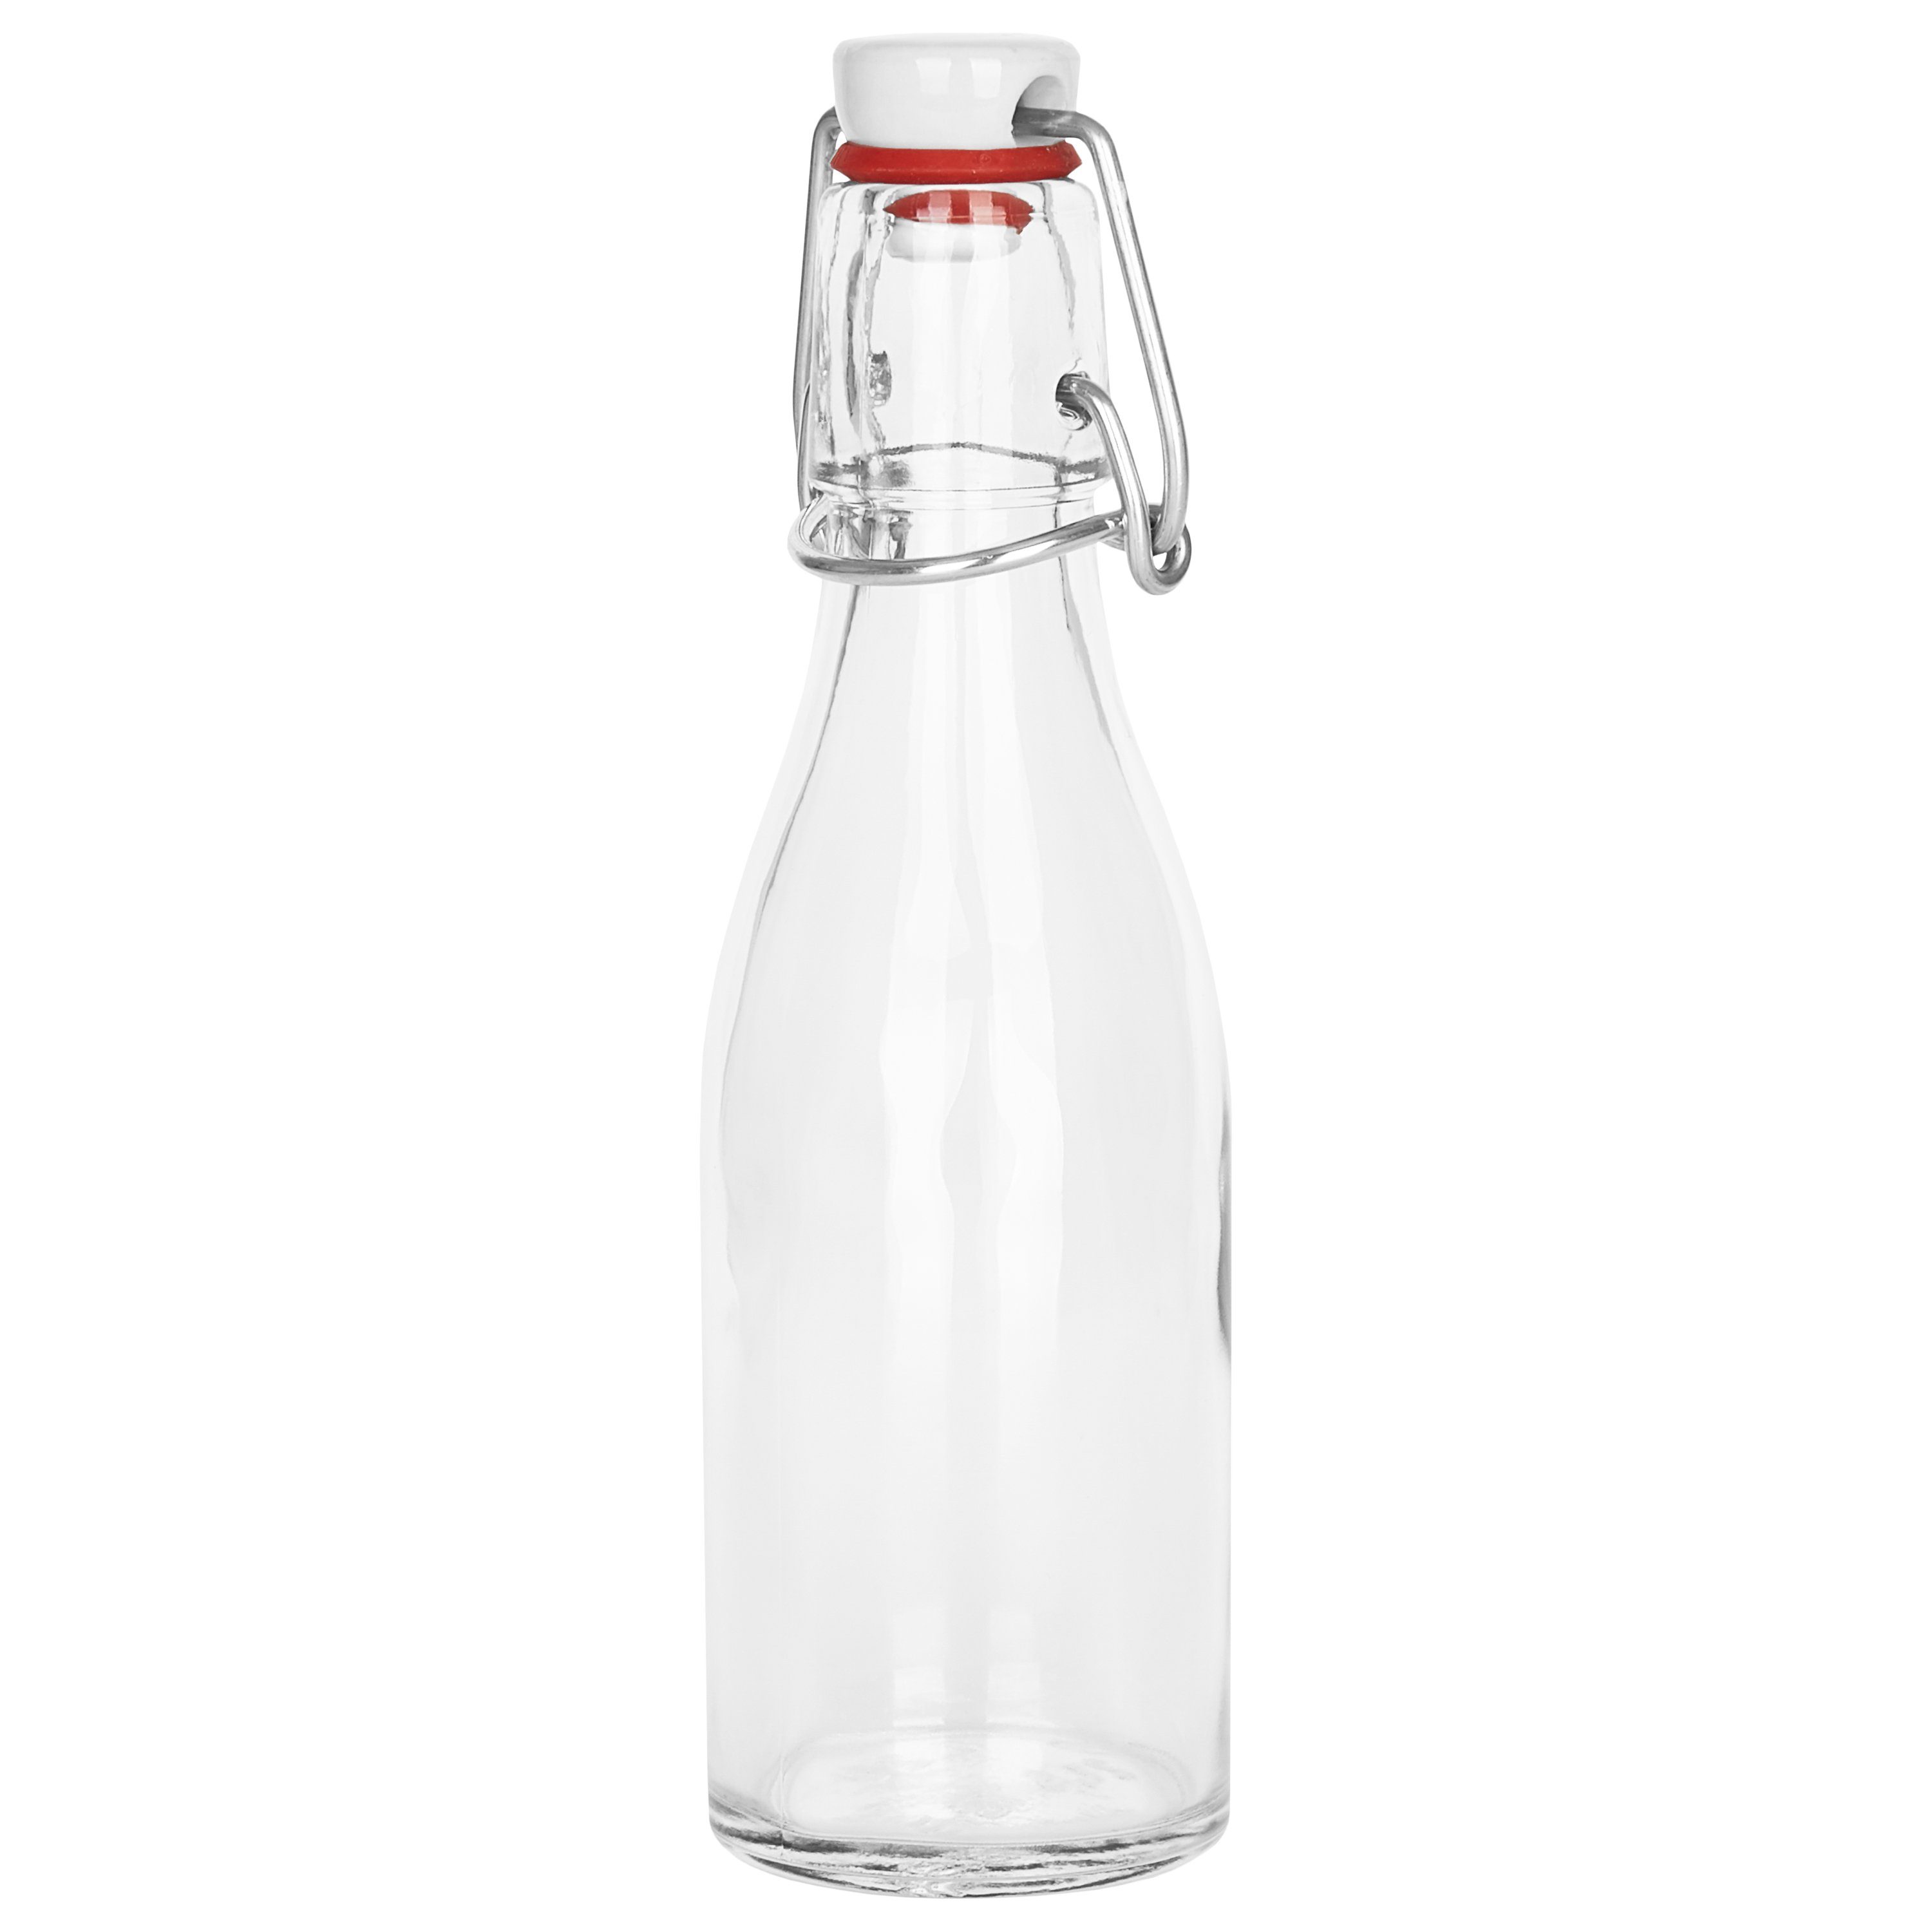 Glasflasche - Bügelflasche 6er Glas ml Most, für Vorratsglas 200 Bügelverschluss + Set MamboCat